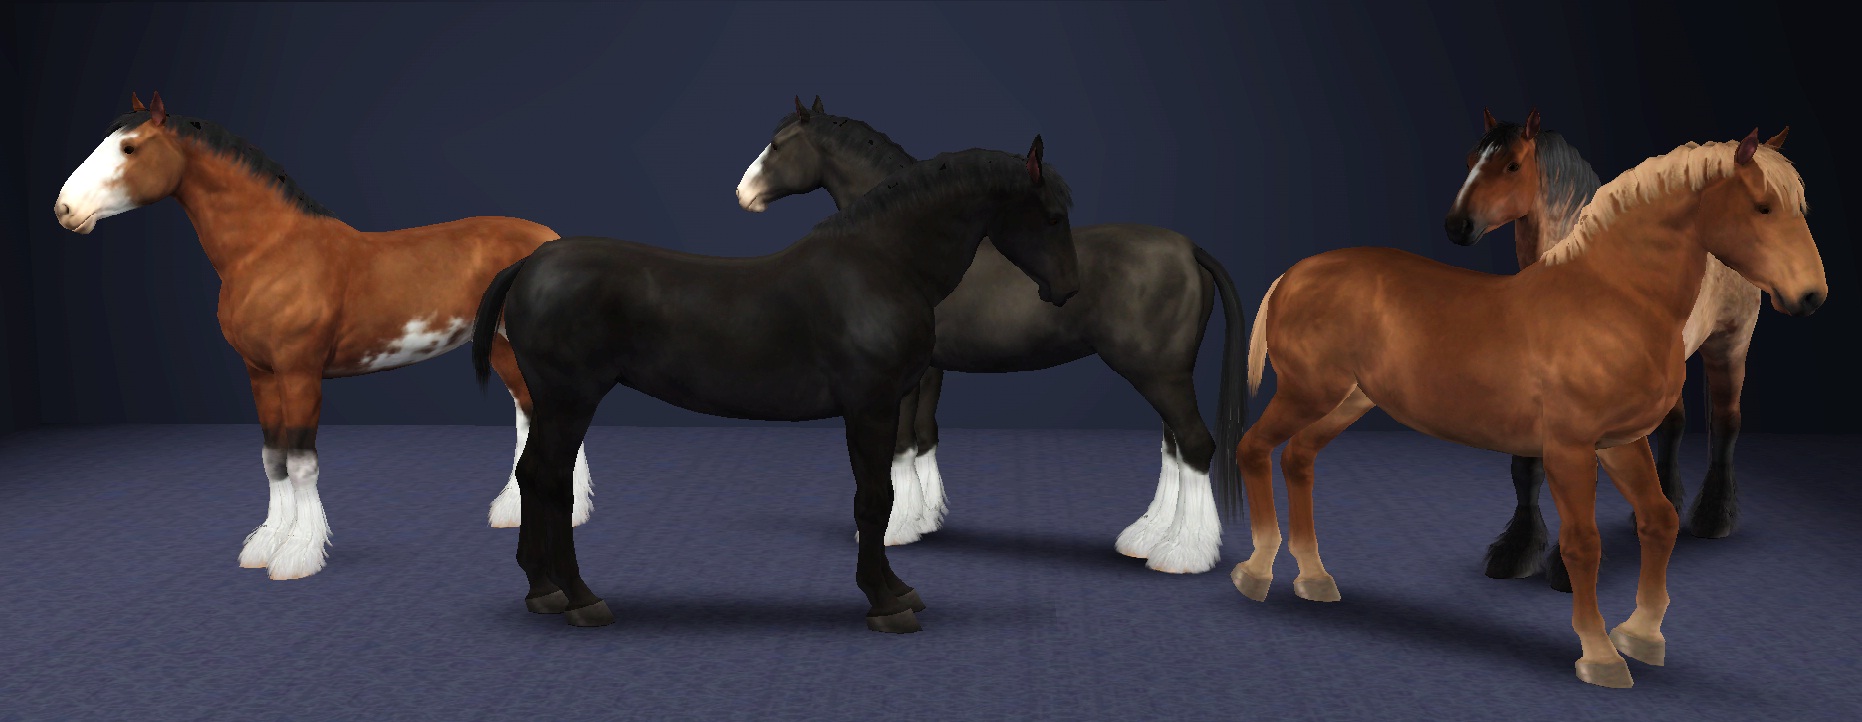 sims 3 pets horses